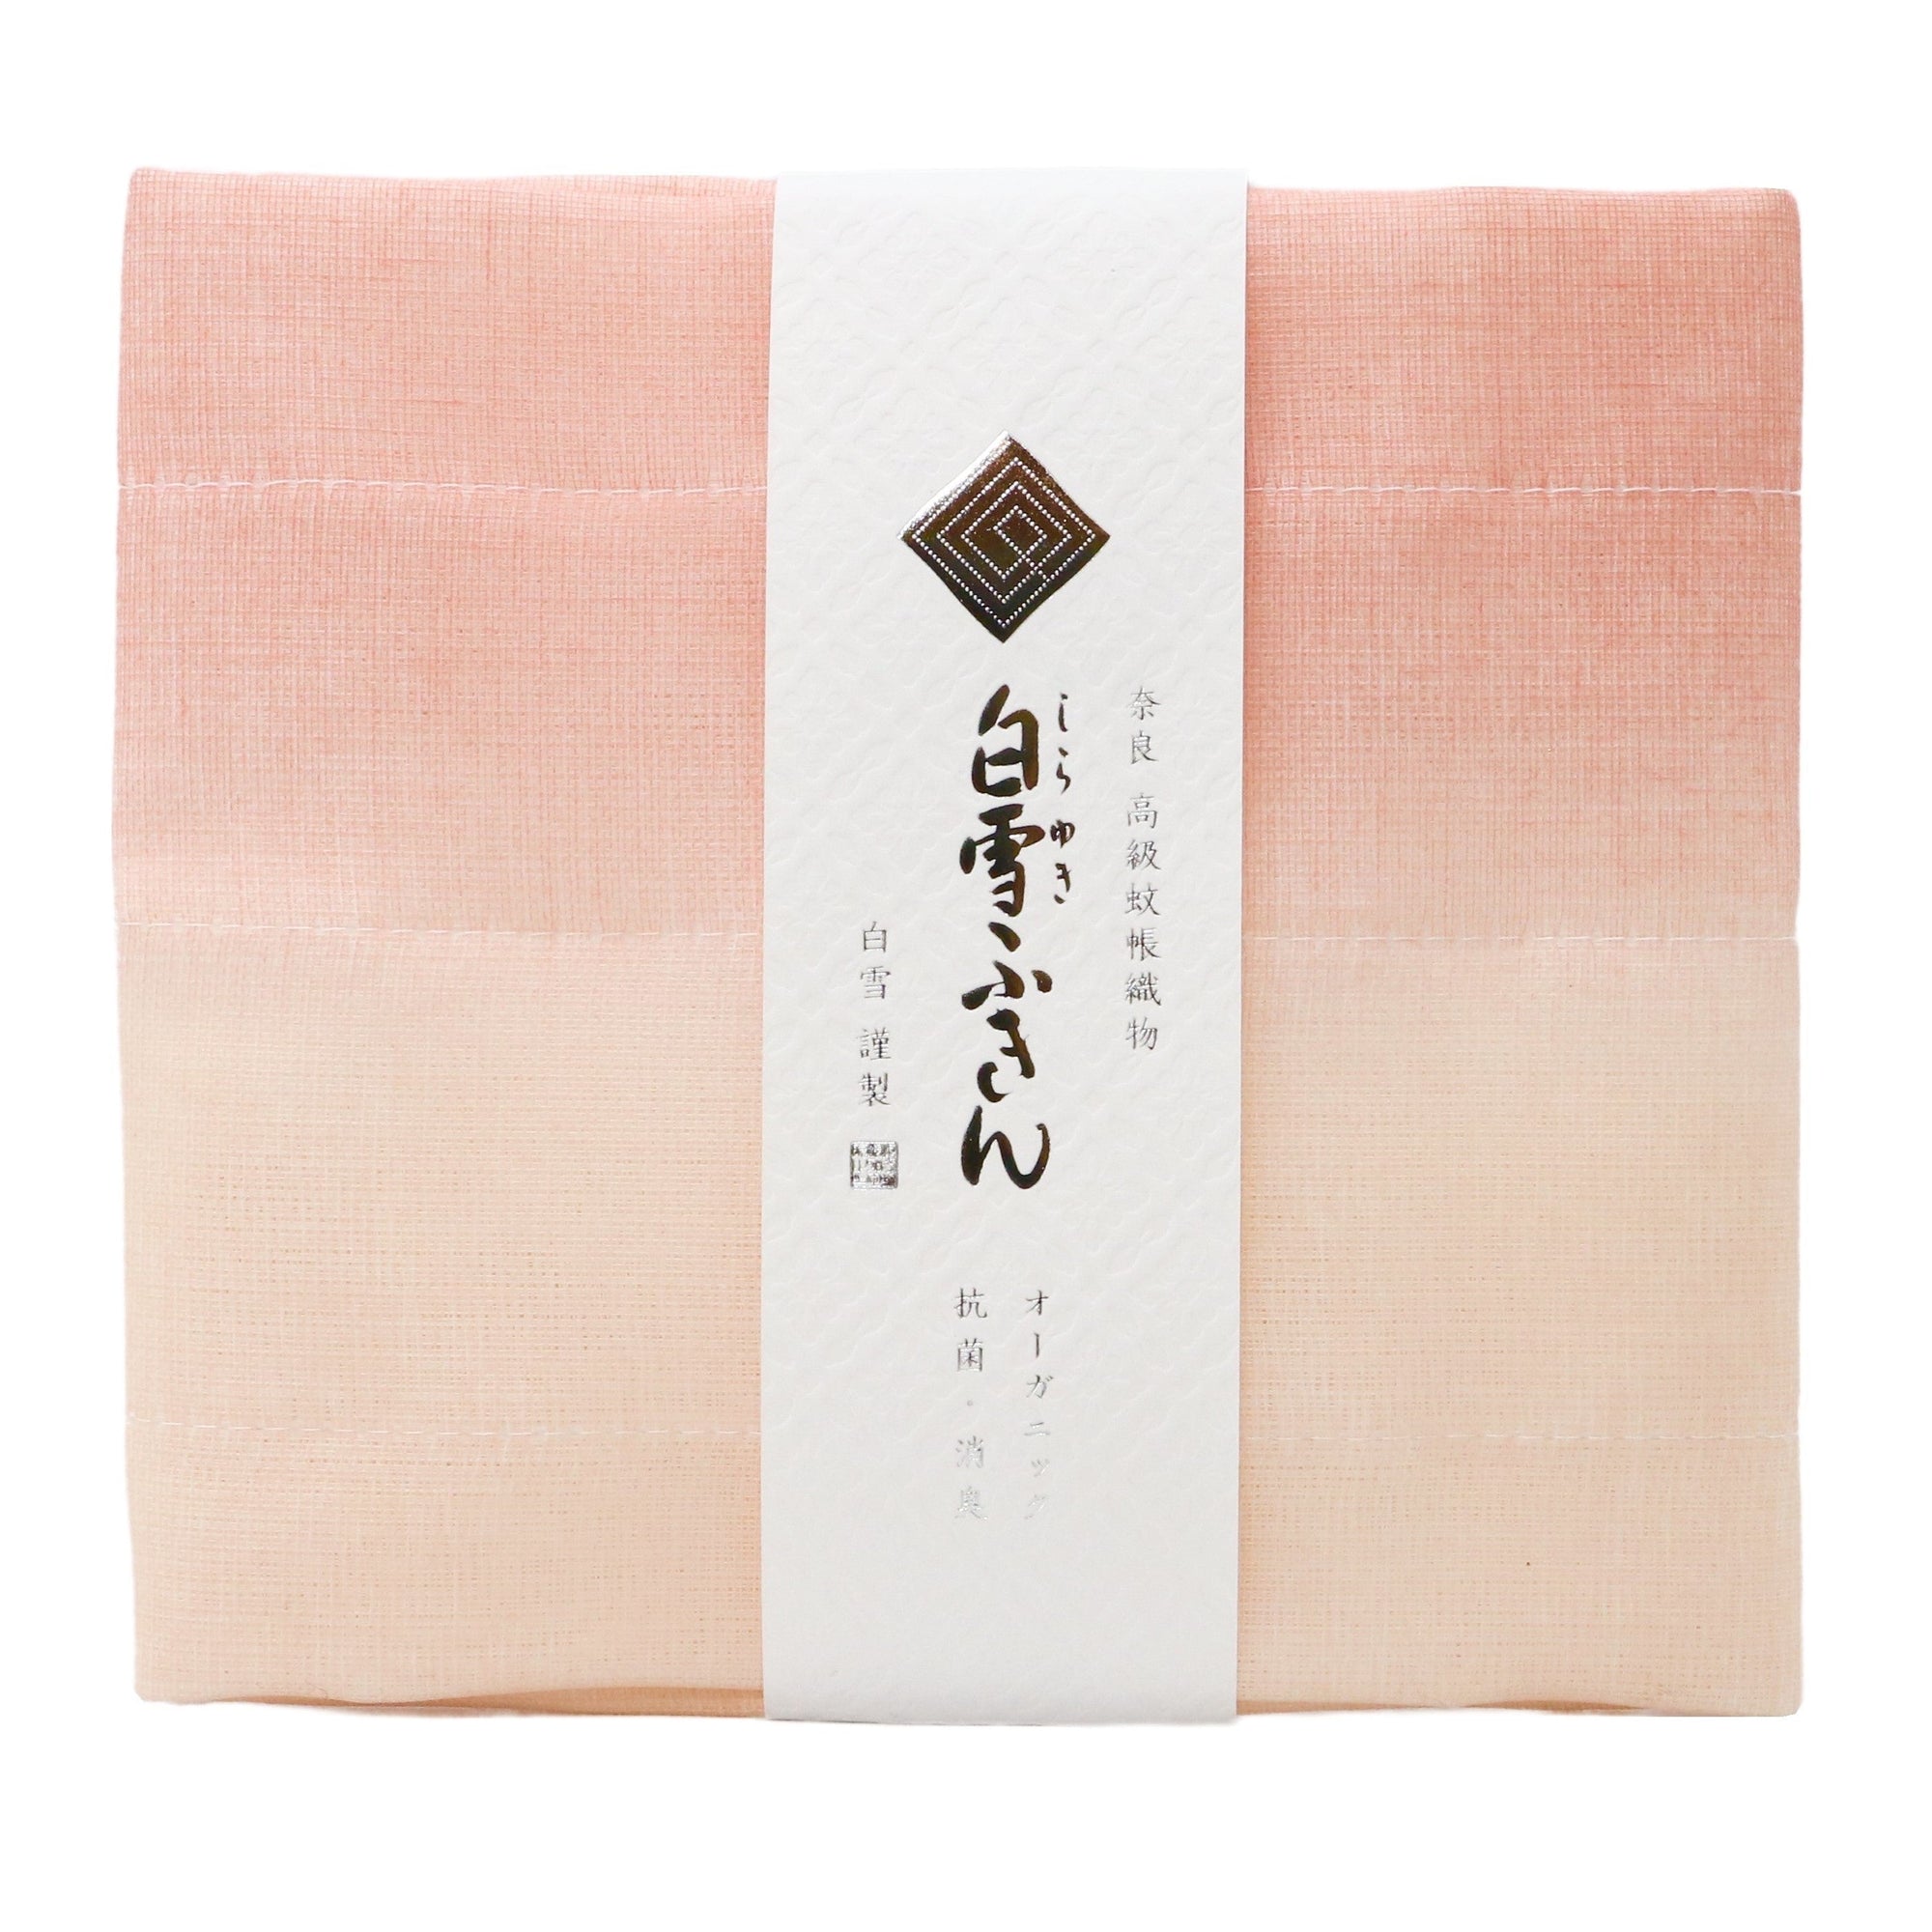 The Organic Shirayuki Japanese Kitchen Cloth Set | Made in Japan